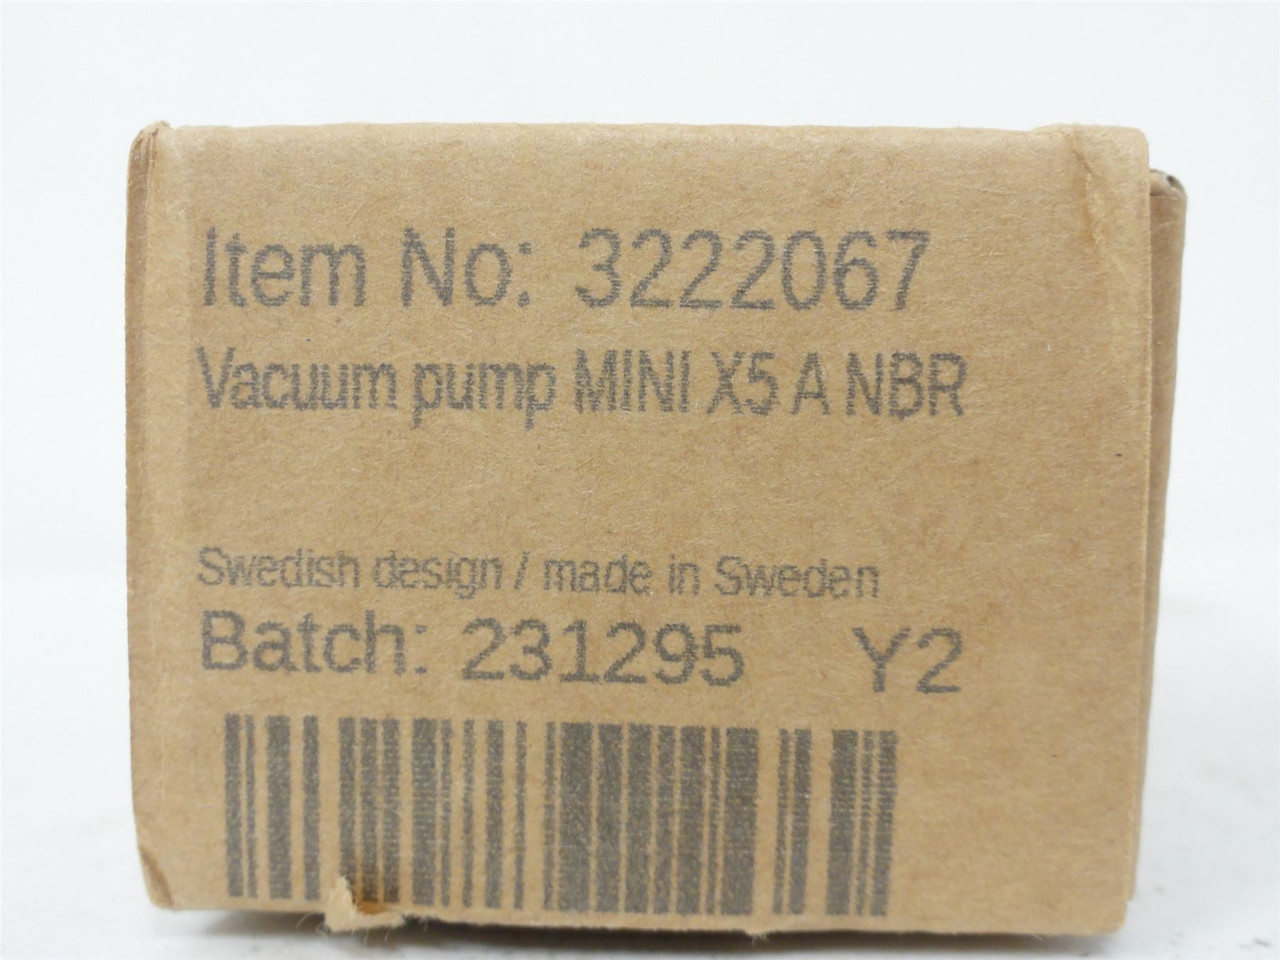 Piab 3222067; Vacuum pump MINI X5 A NBR; X5A6-AN